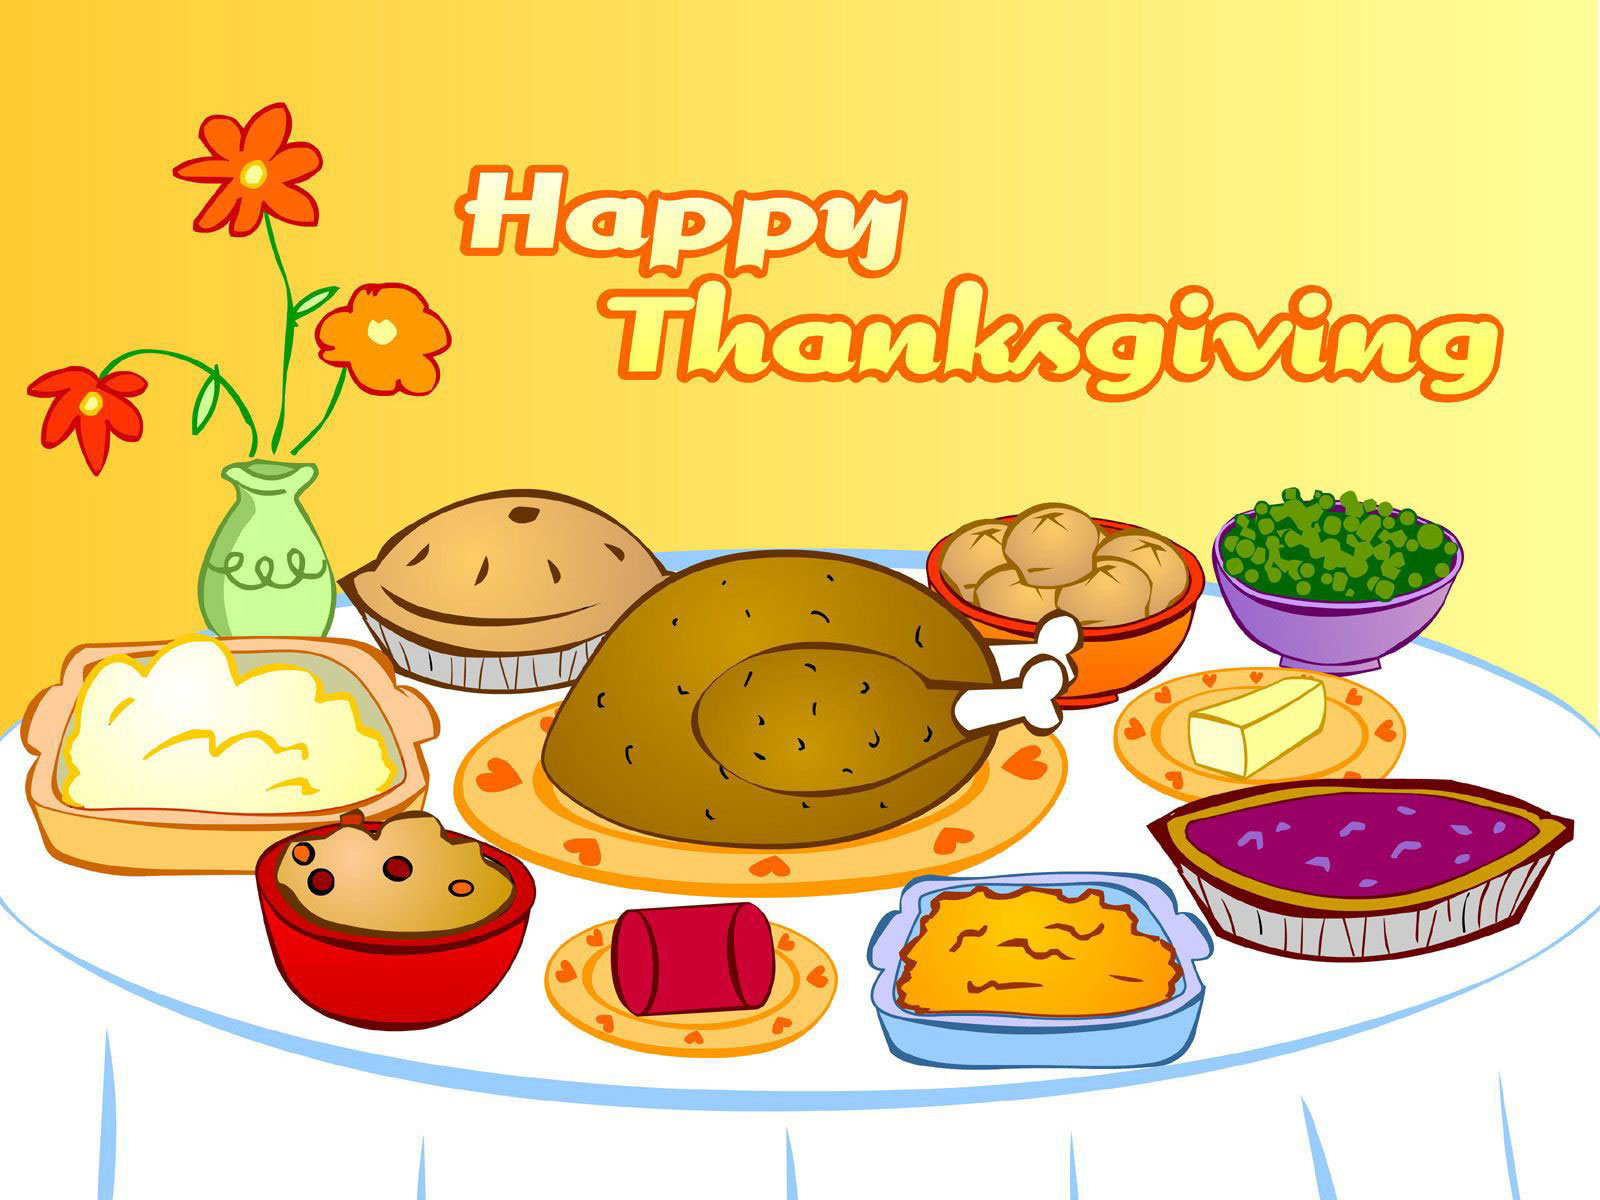 Tigger Thanksgiving Wallpaper Online Dining